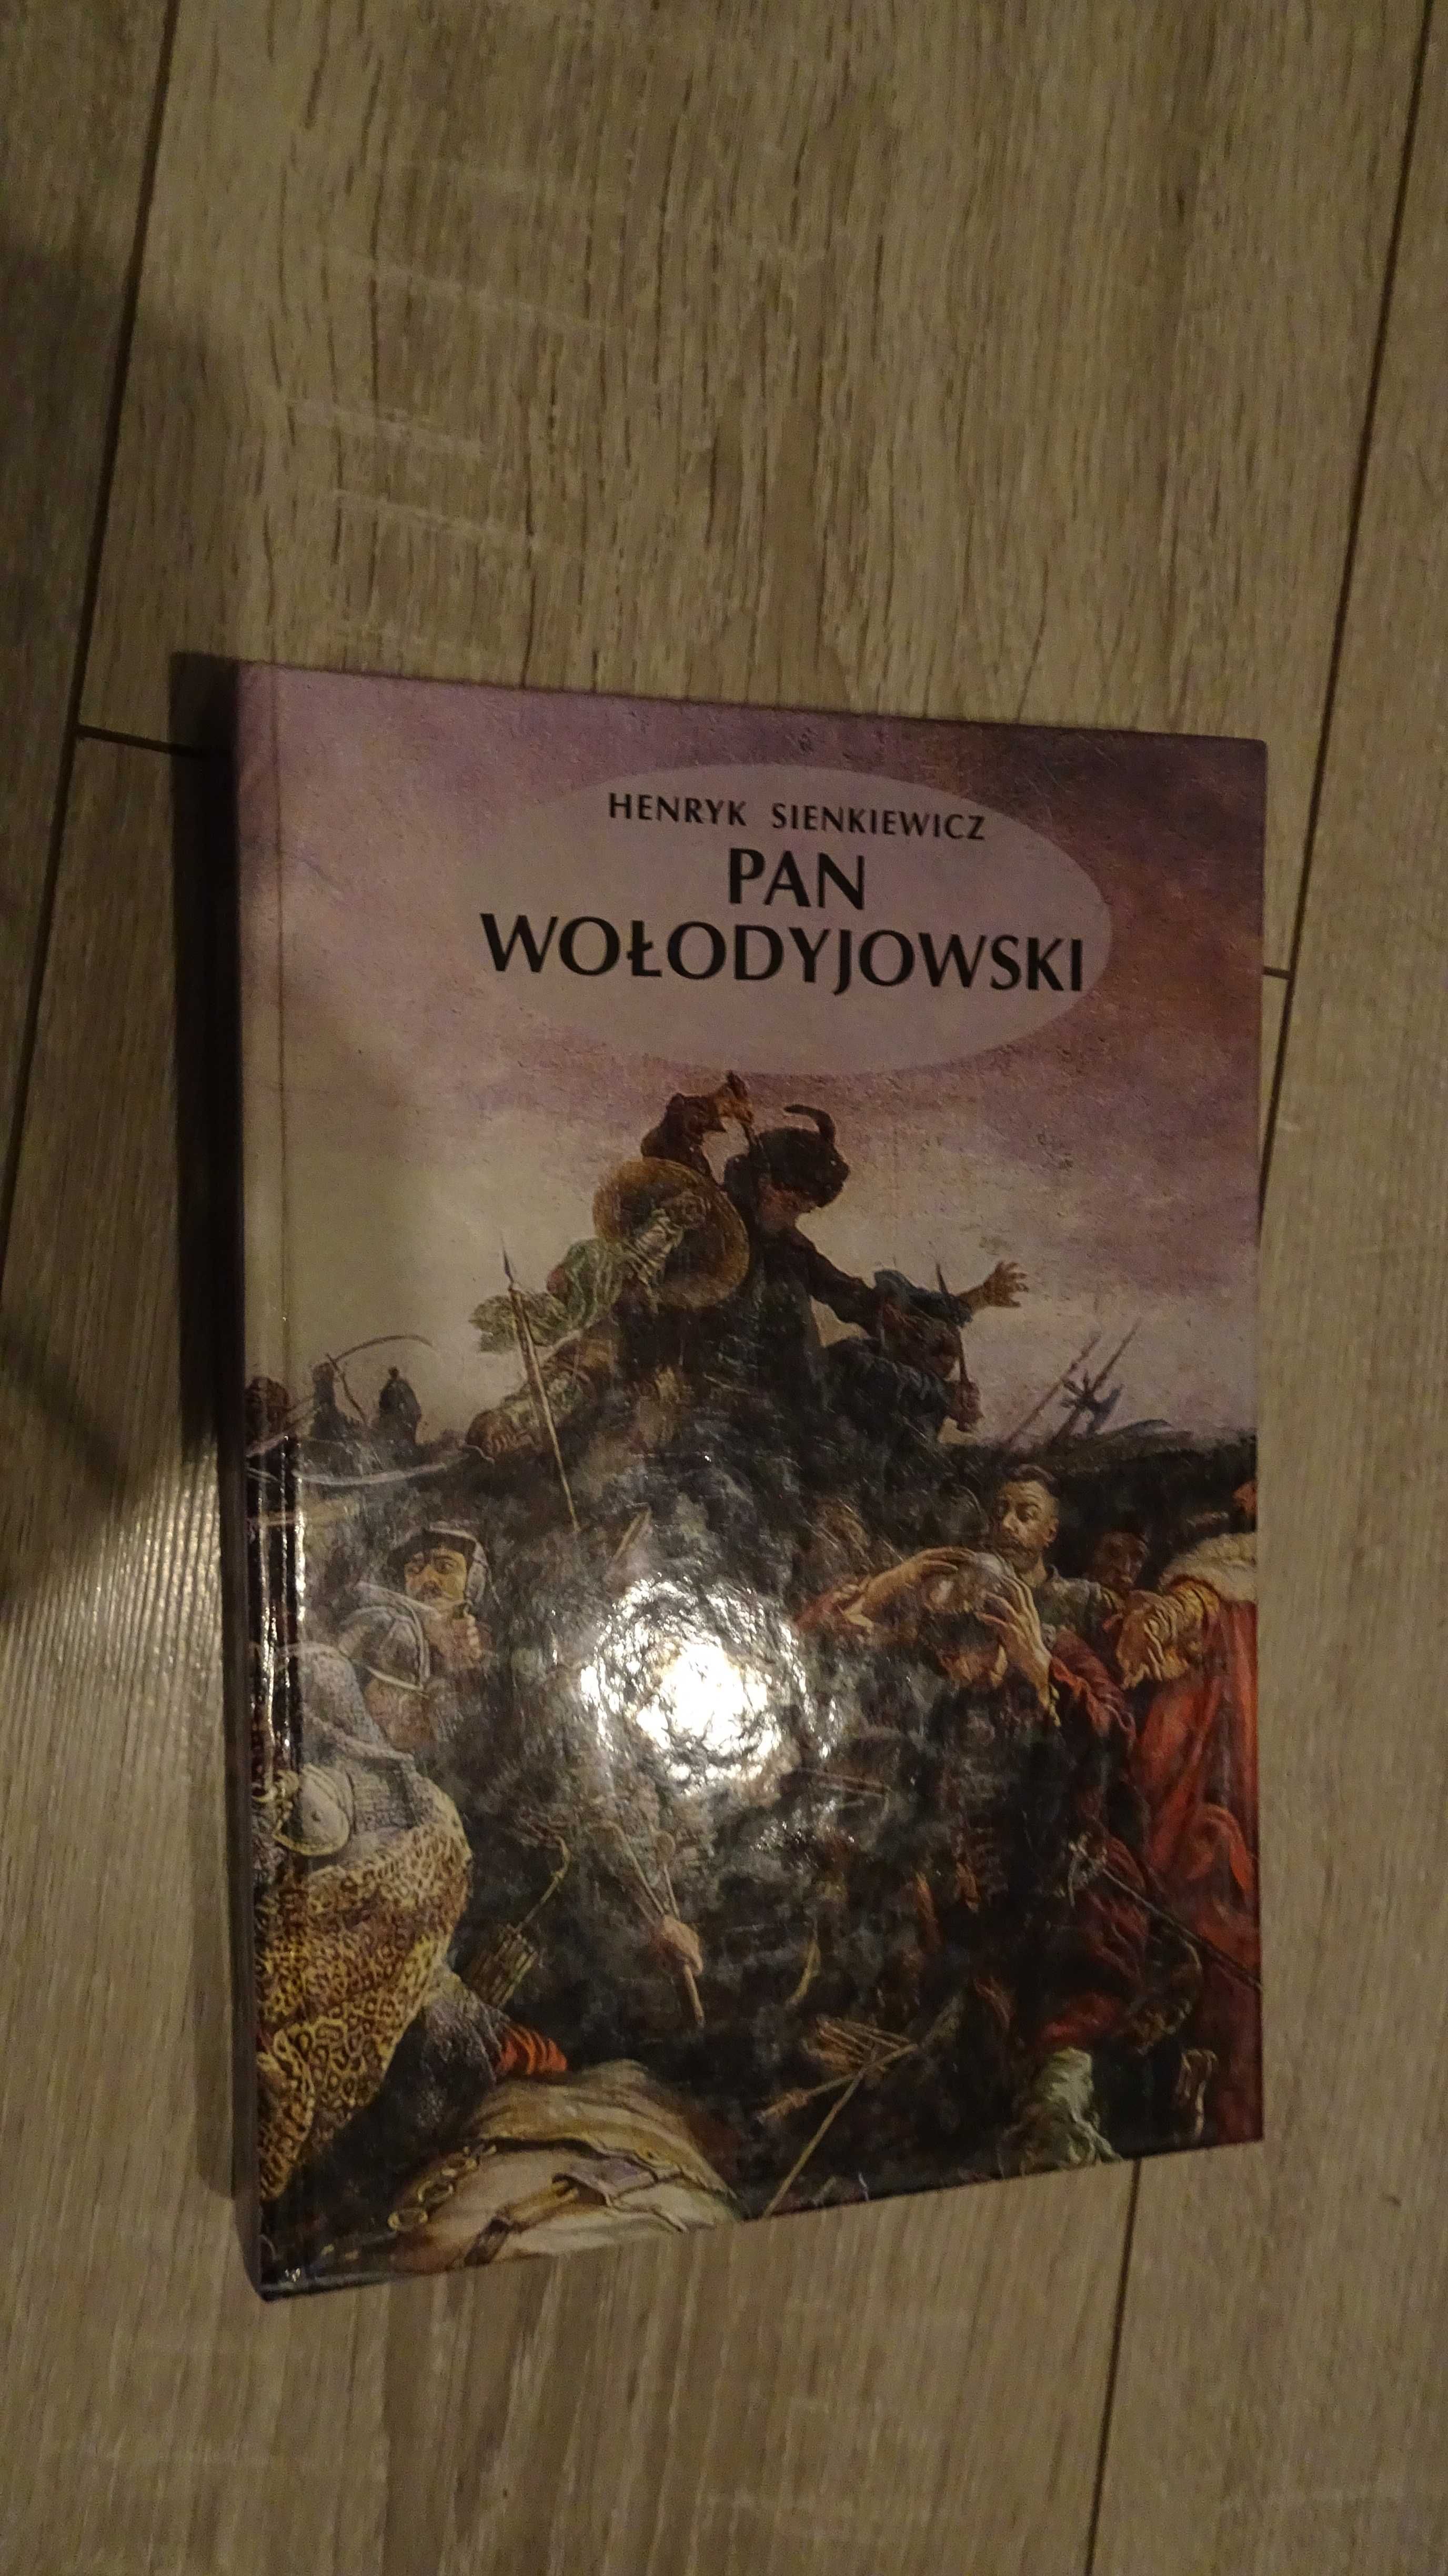 Henryk Sienkiewicz "Pan Wołodyjowski"